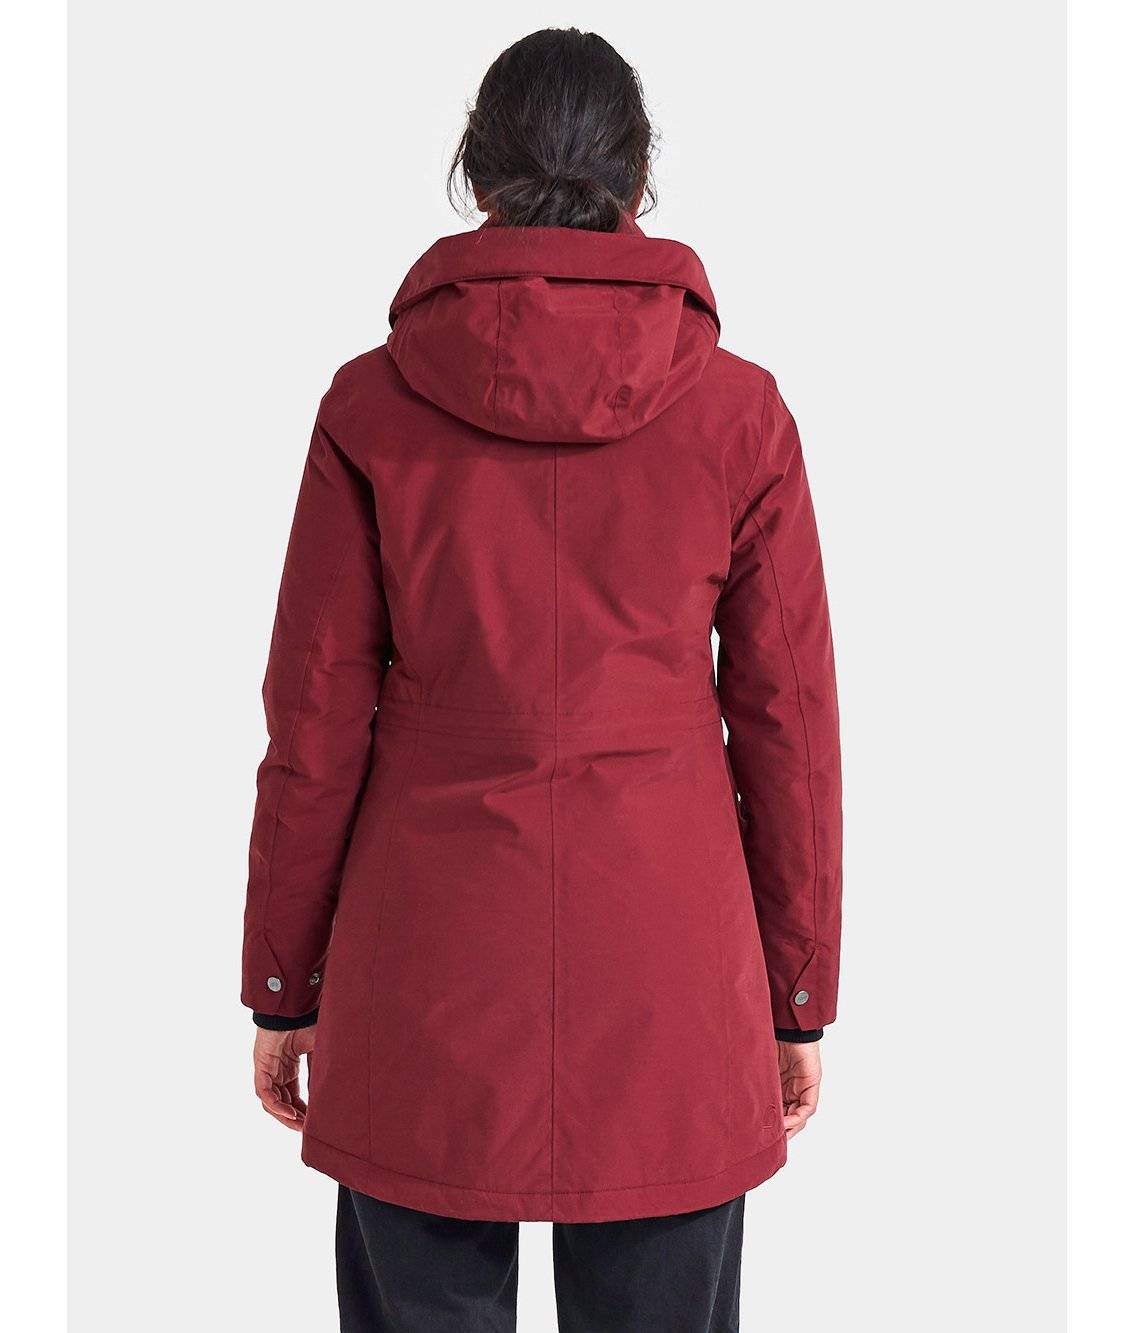 Купить куртка женская didriksons sanna wns parka, 446 красный бархат,  503450, цена в интернет магазине Навелосипеде.рф